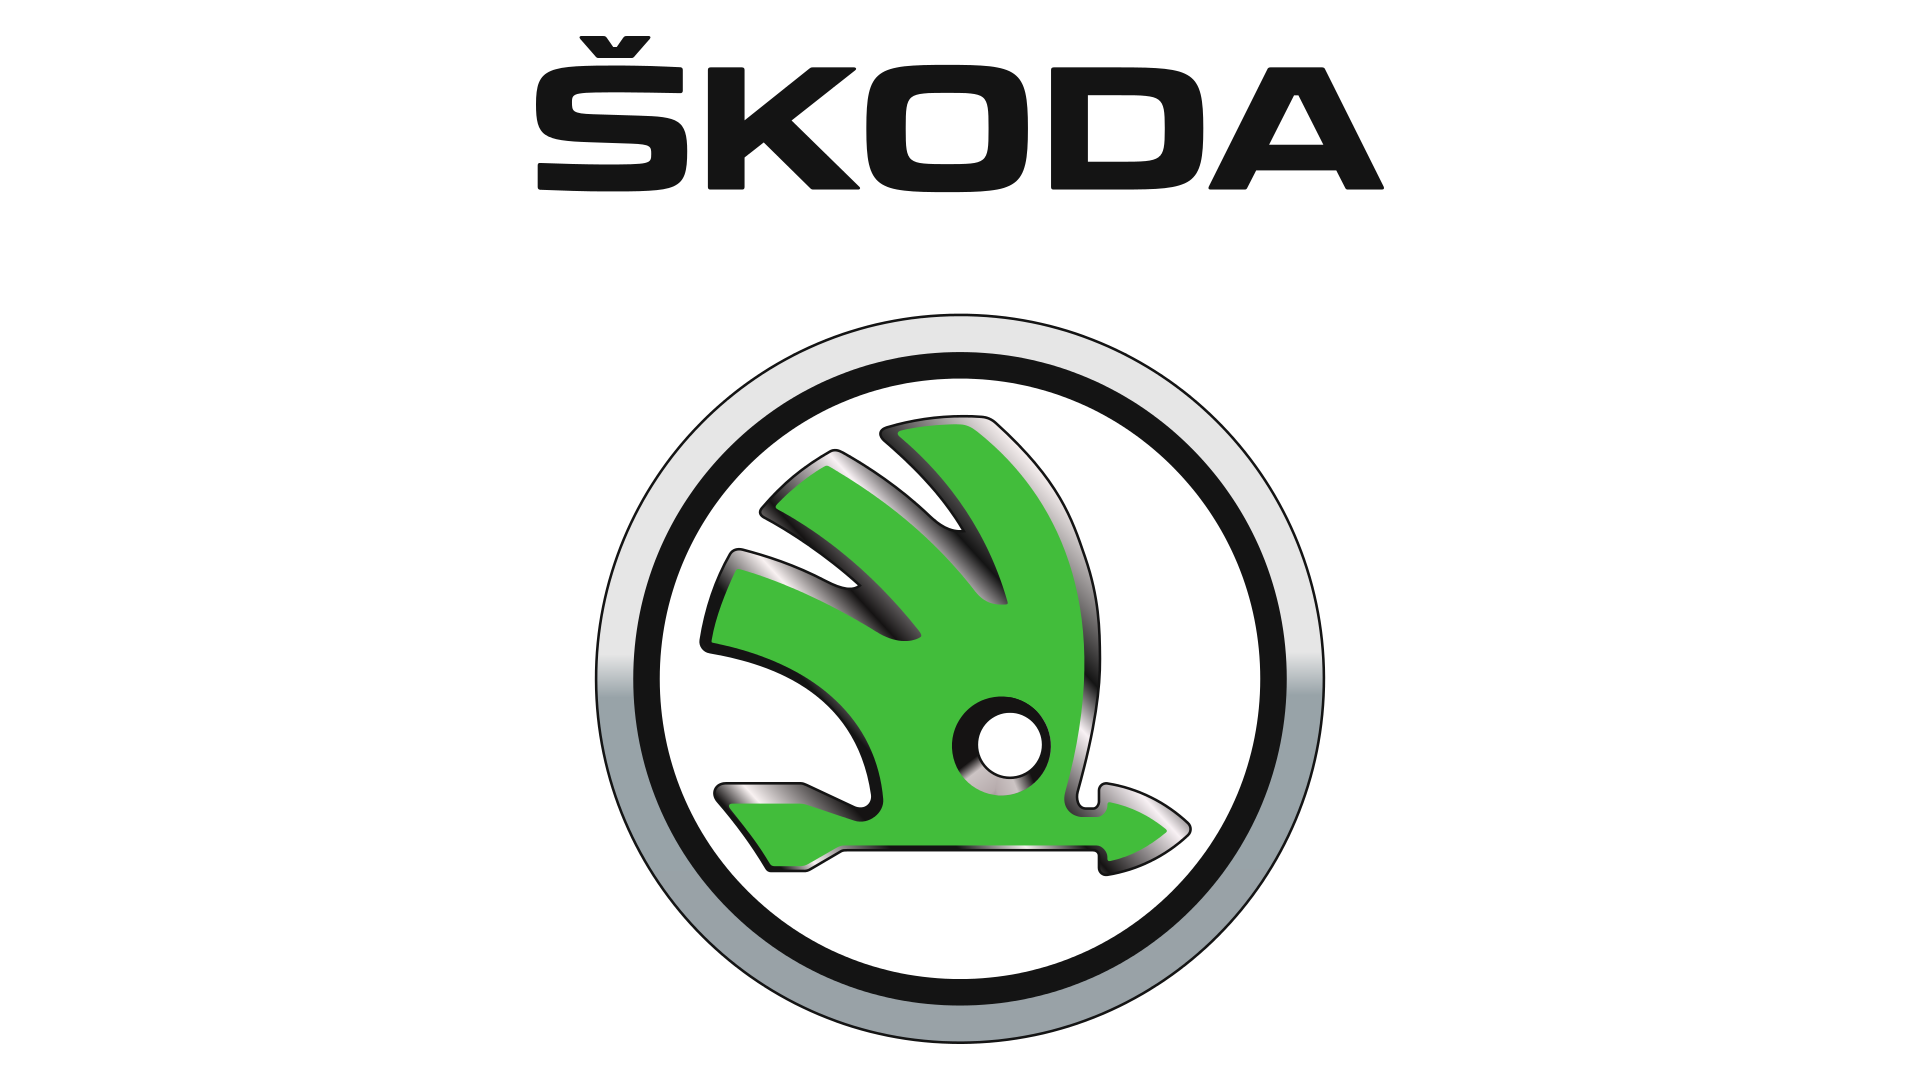 Skoda Logo 2018 , Png Downloa